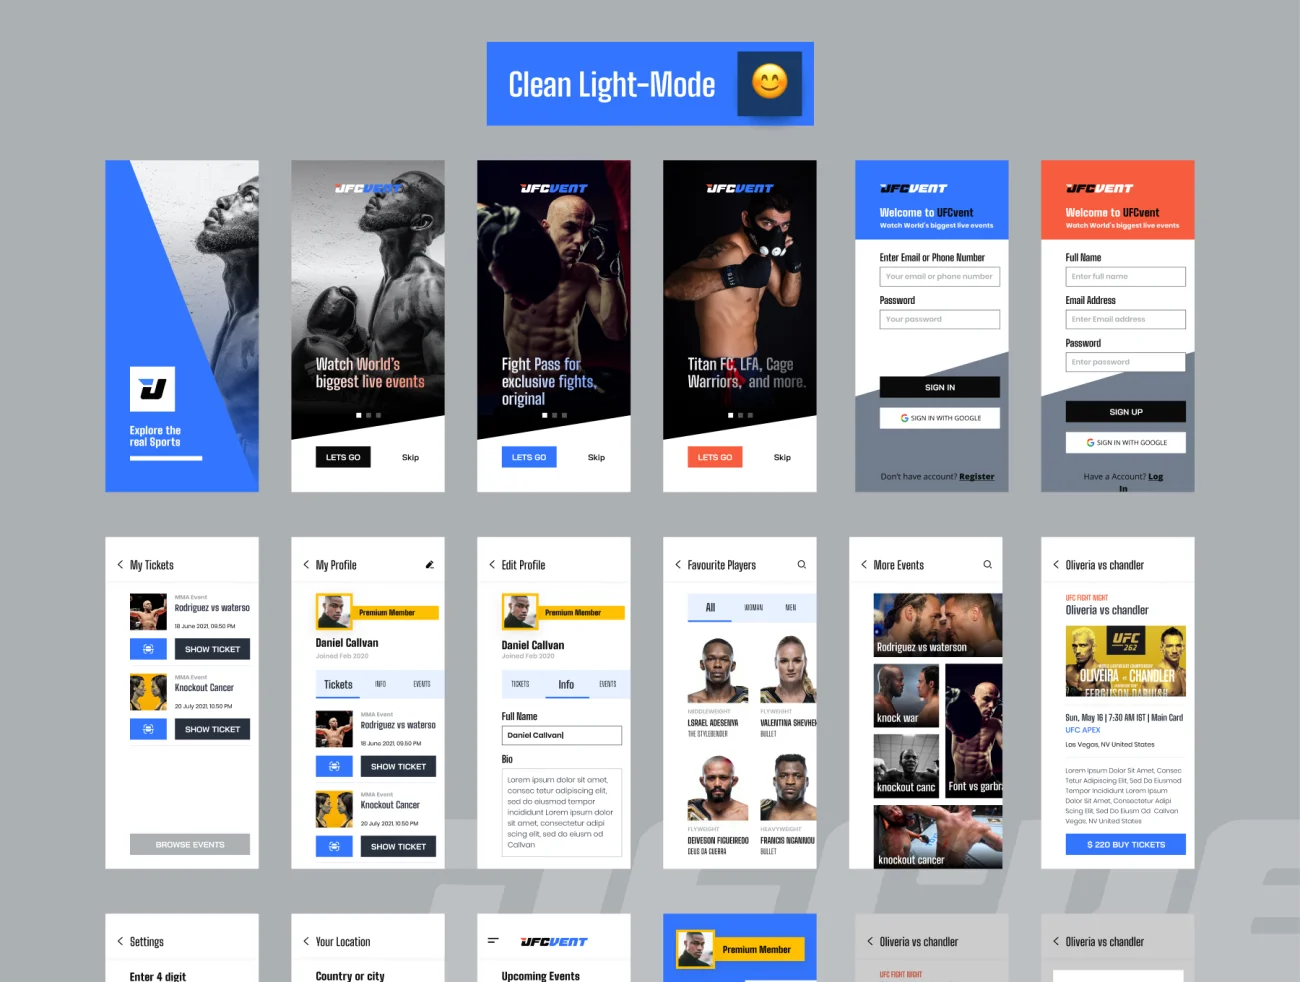 20屏完整版UFC MMA拳击摔跤综合格斗赛事比赛应用 UFC VENT – MMA Event Booking app插图11